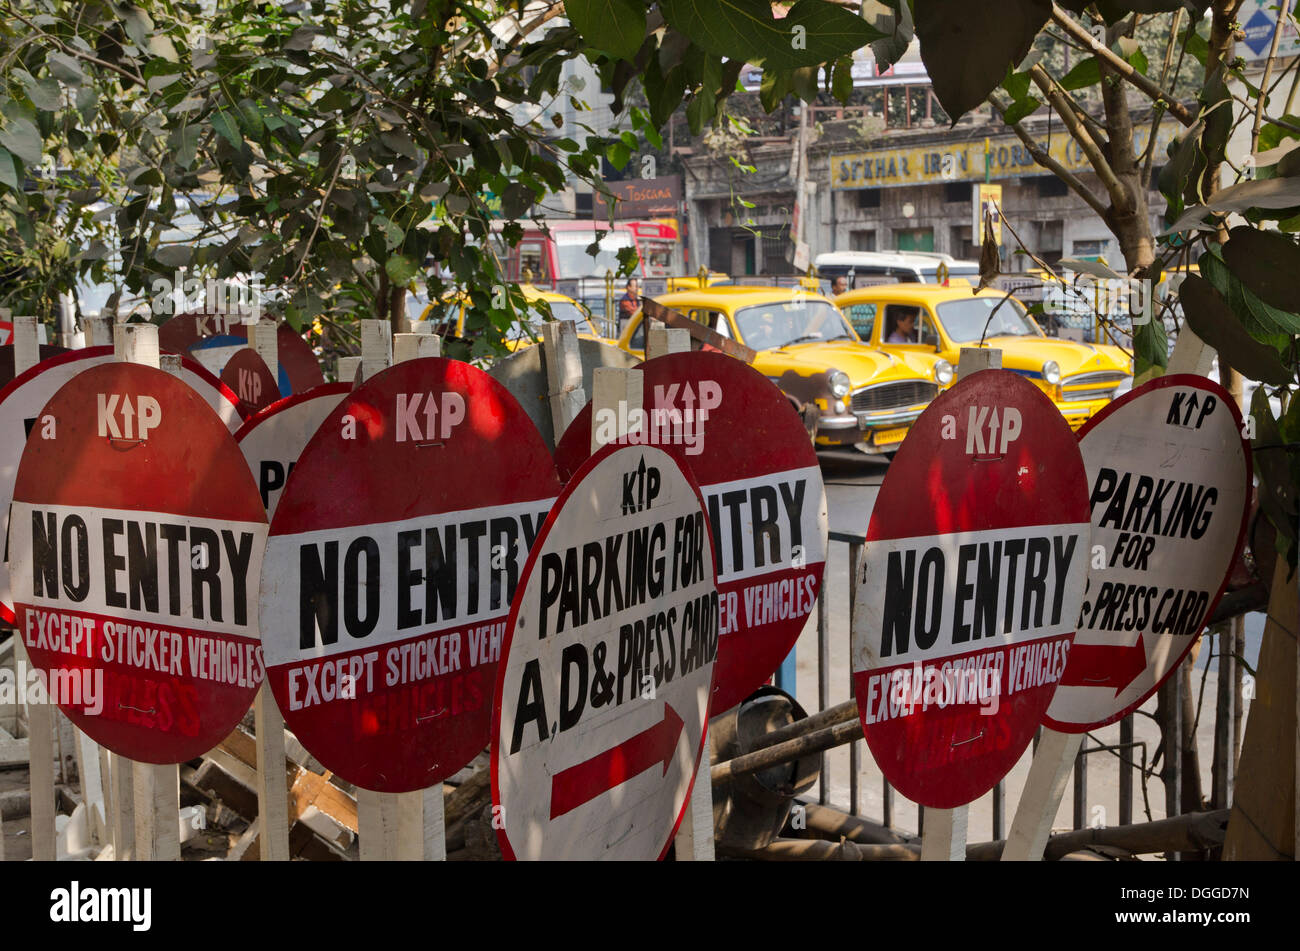 'No entry' and 'Parking' traffic signs, Kolkata, India, Asia Stock Photo